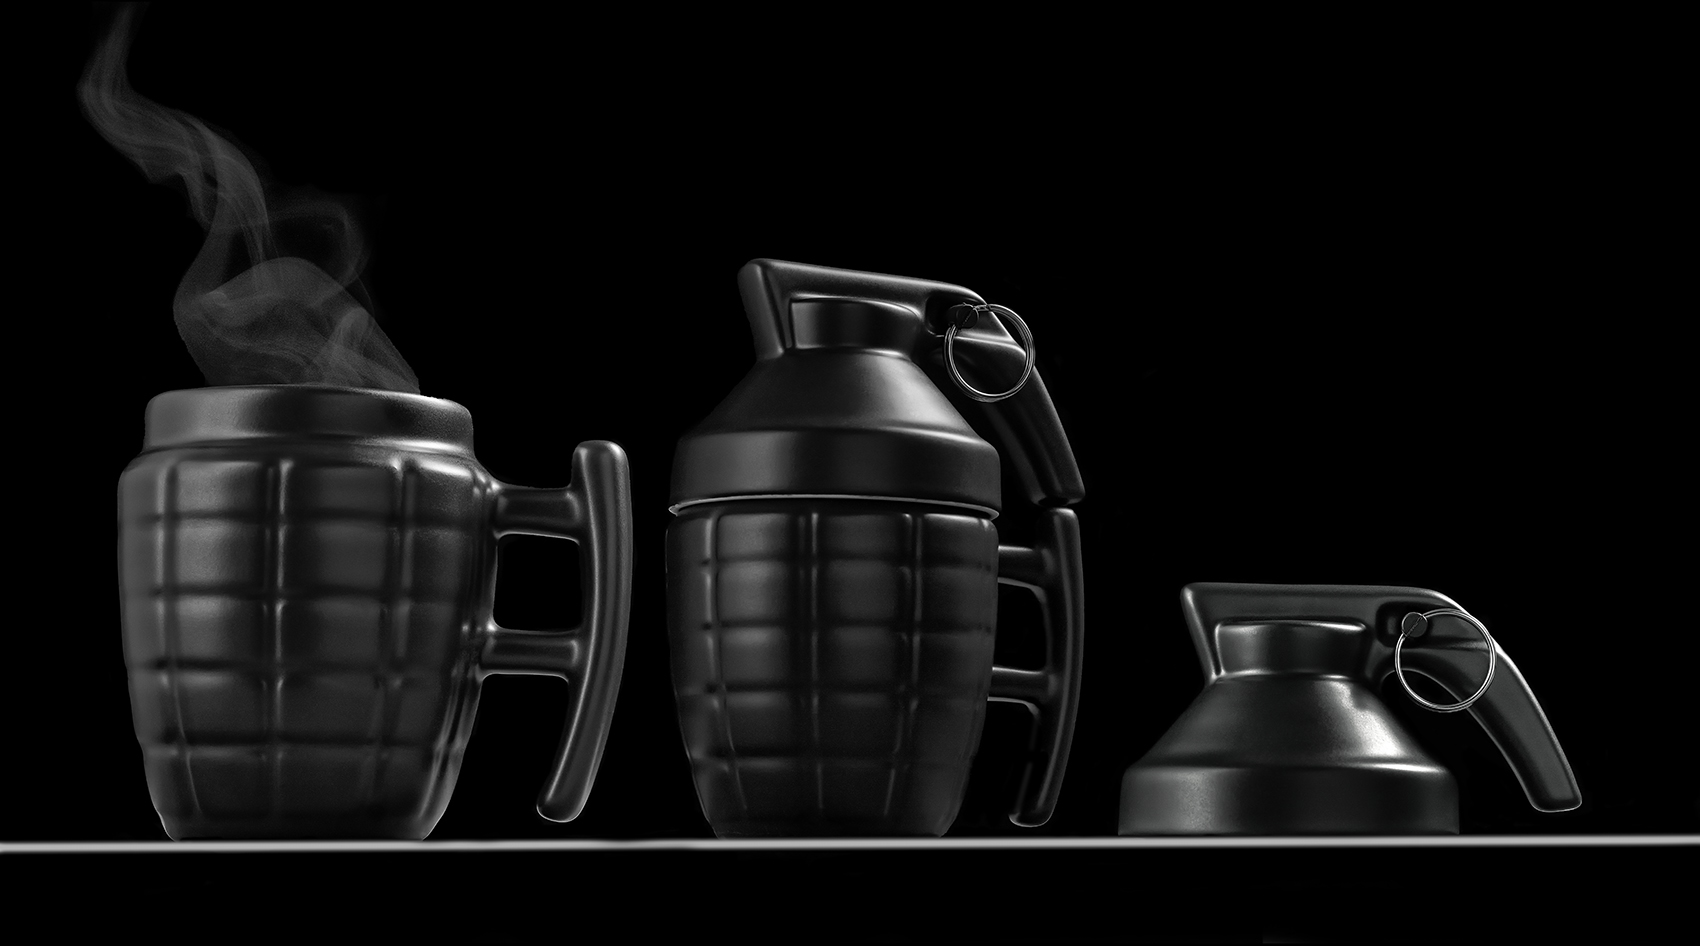 Grenade mugs